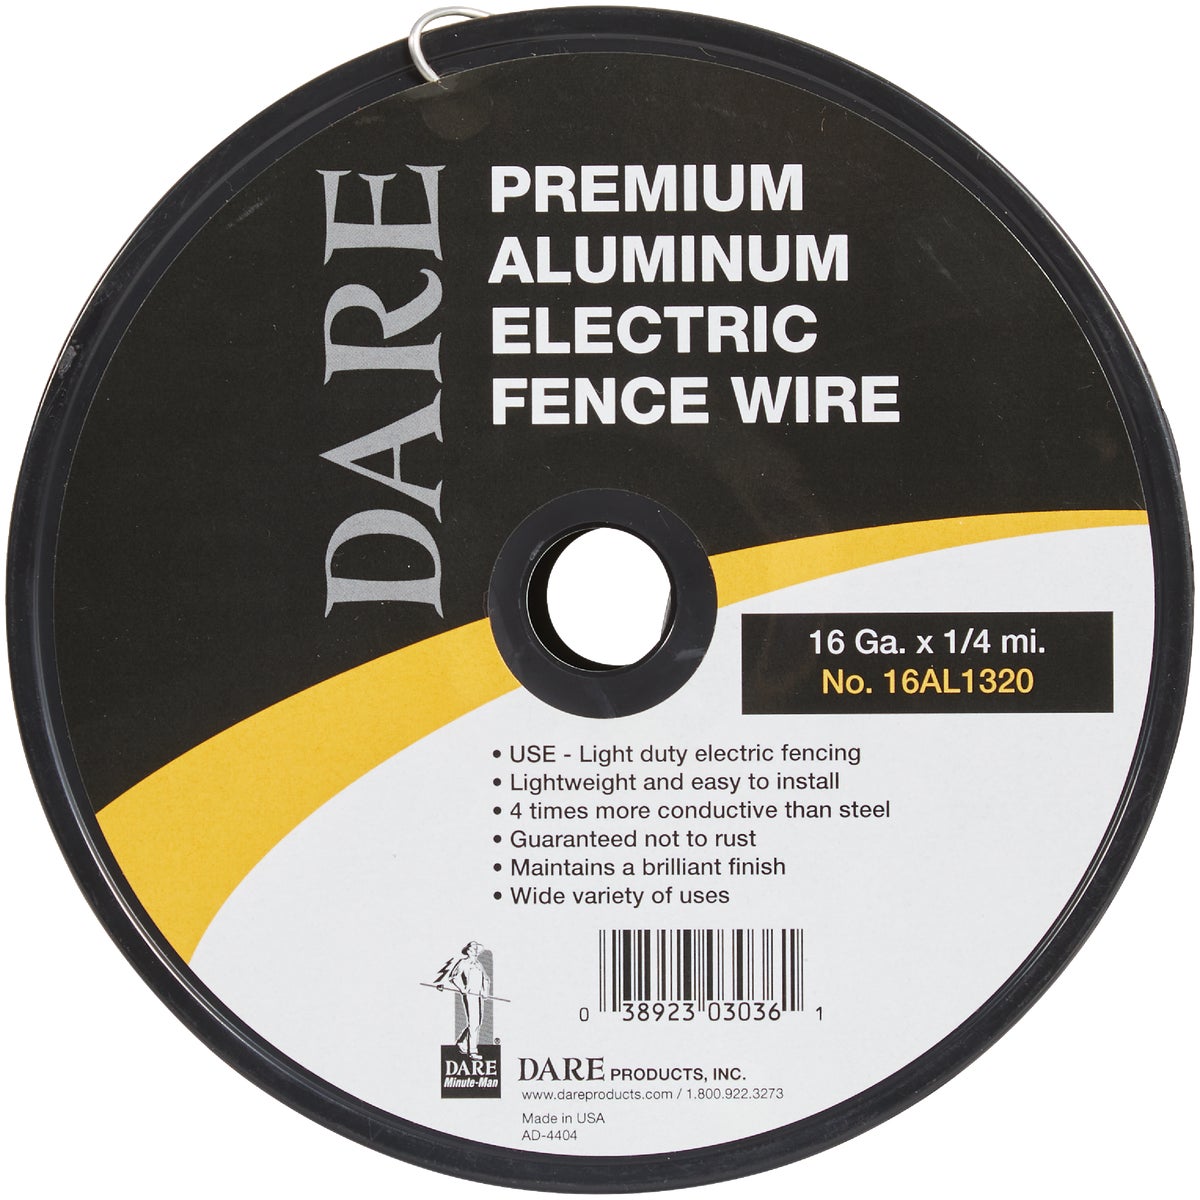 Dare 16AL1320 Dare 1/4-Mile x 16 Ga. Aluminum Electric Fence Wire 16AL1320